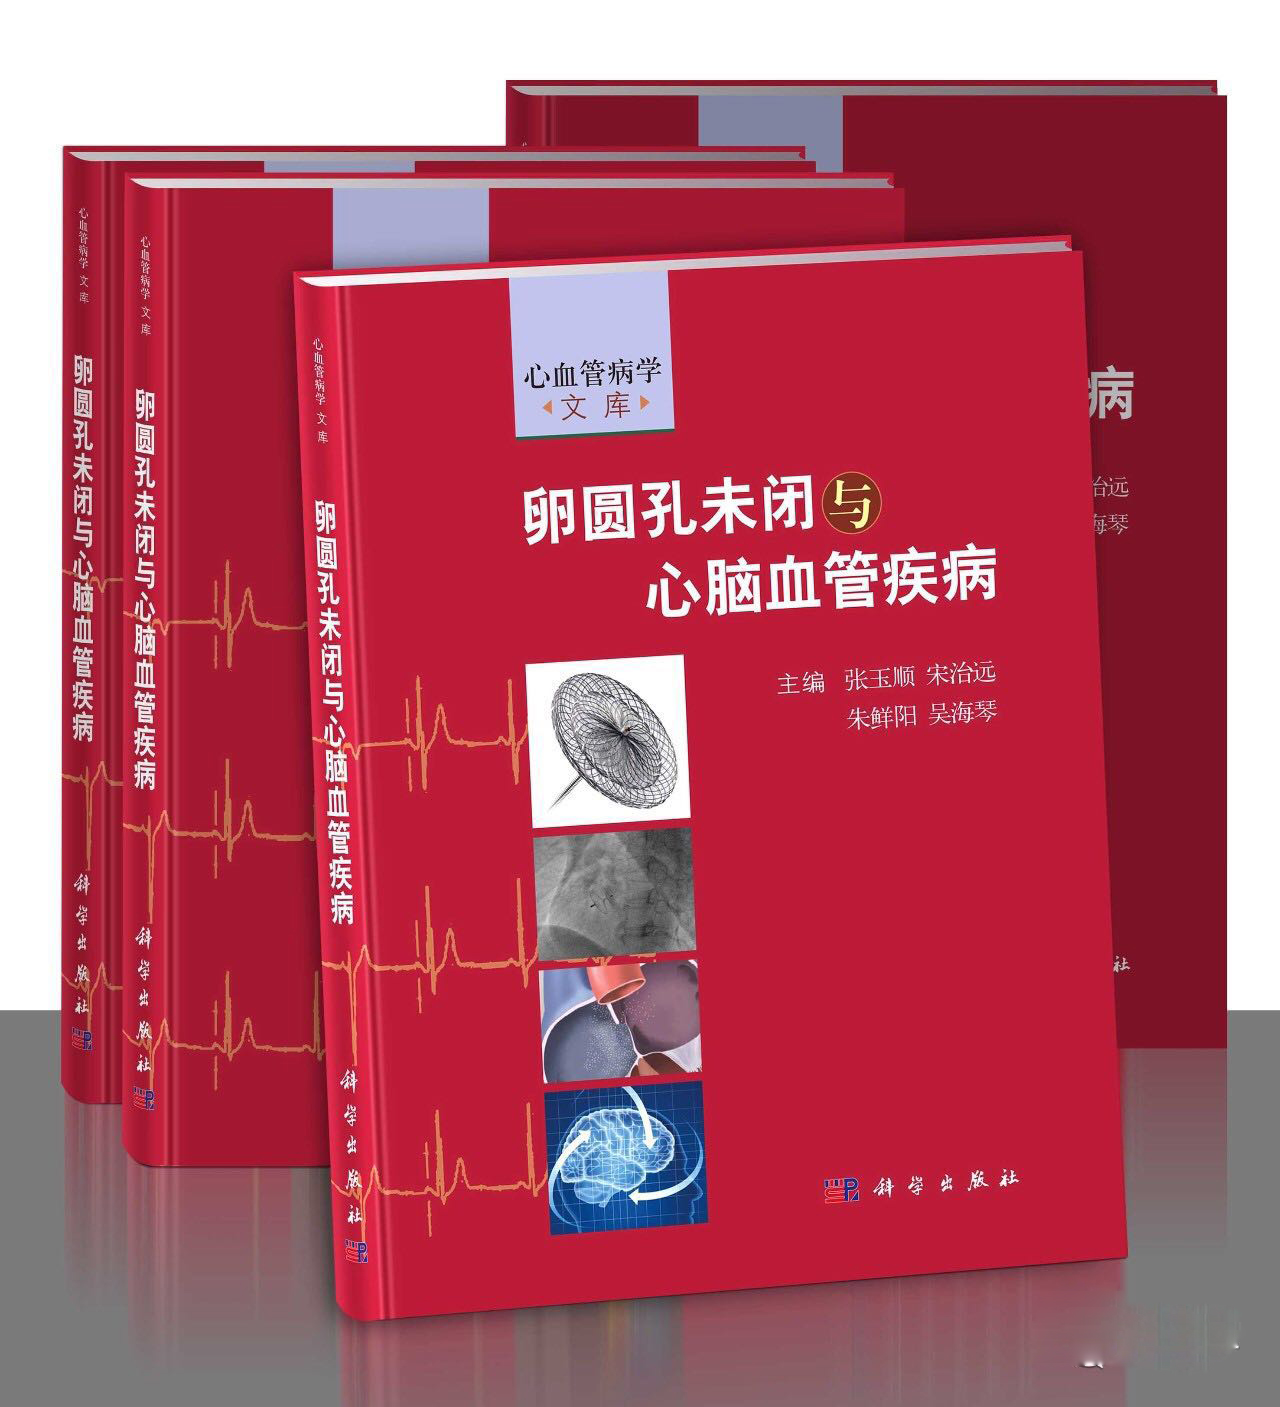 新书发布 |《卵圆孔未闭与心脑血管疾病》由科学出版社出版发行